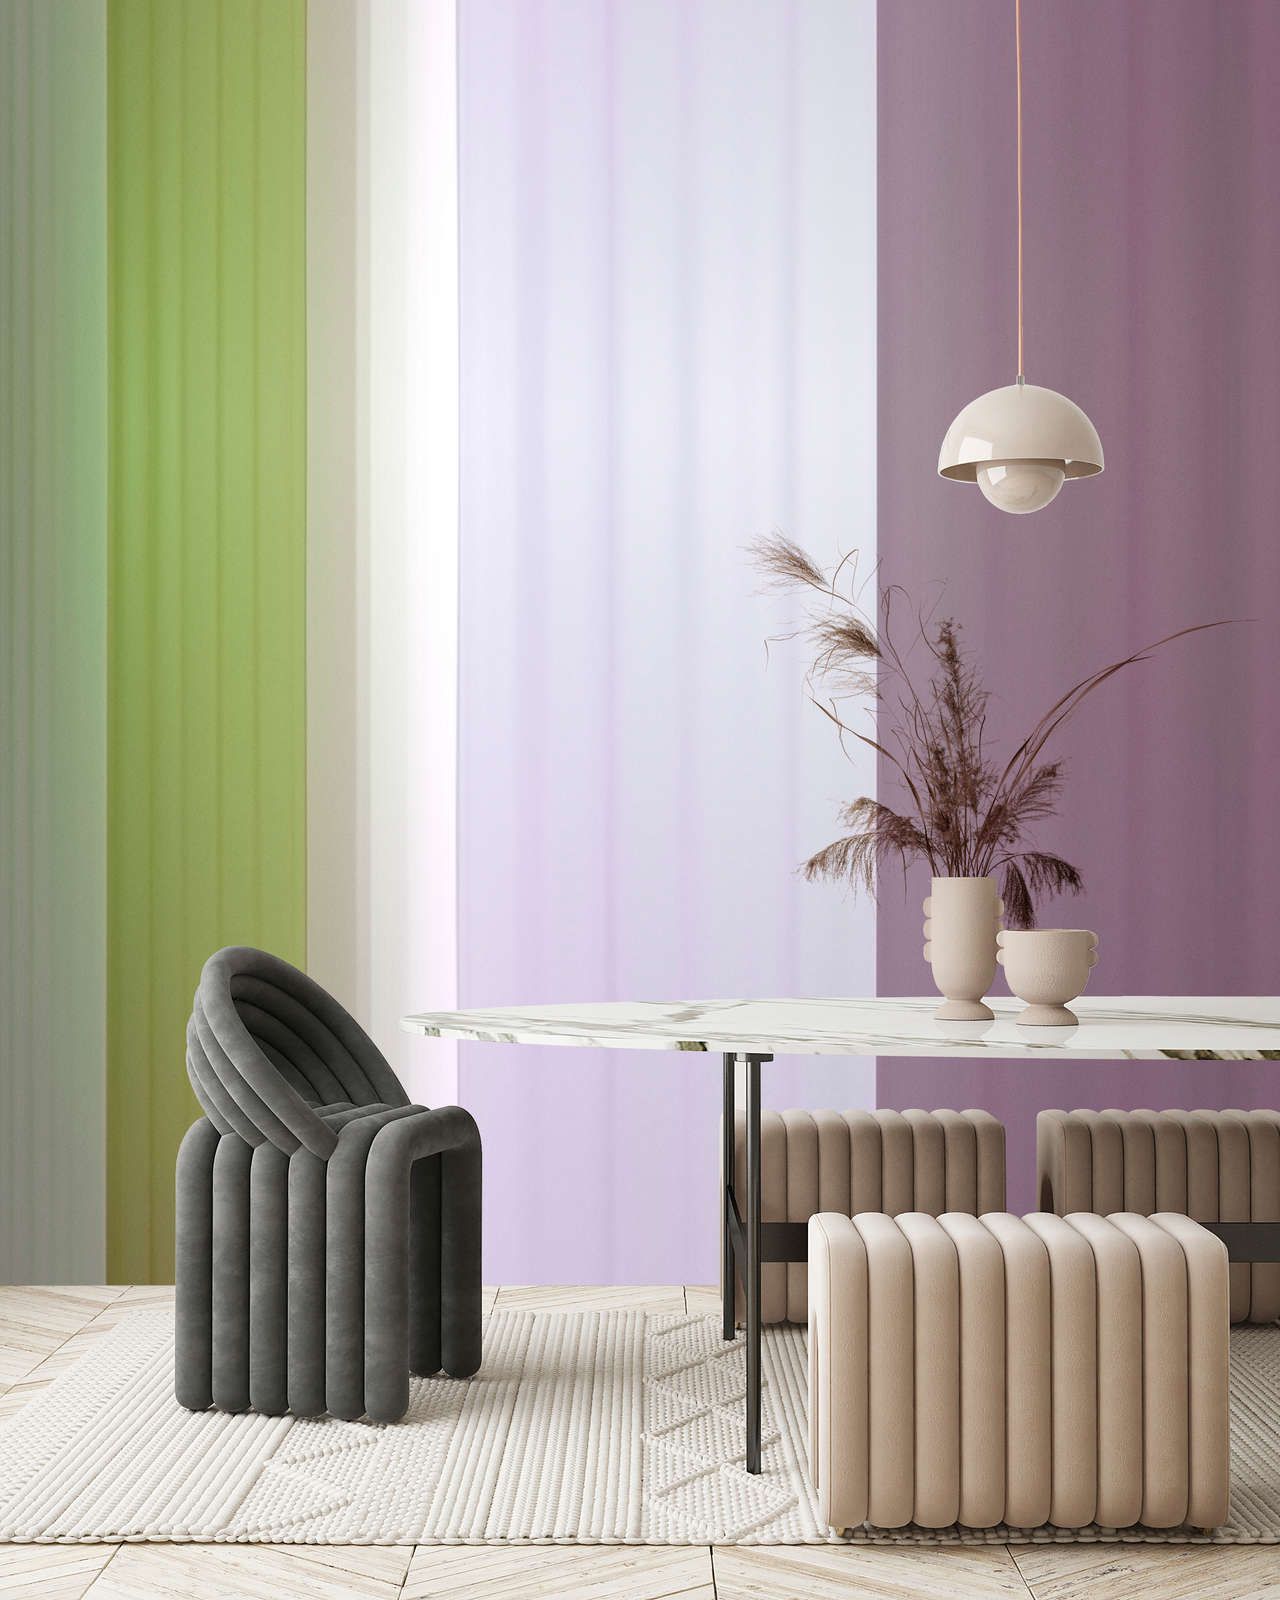             Digital behang »co-colores 3« - Kleurverloop met strepen - groen, lila, paars | Gladde, licht parelmoerachtige vliesstof
        